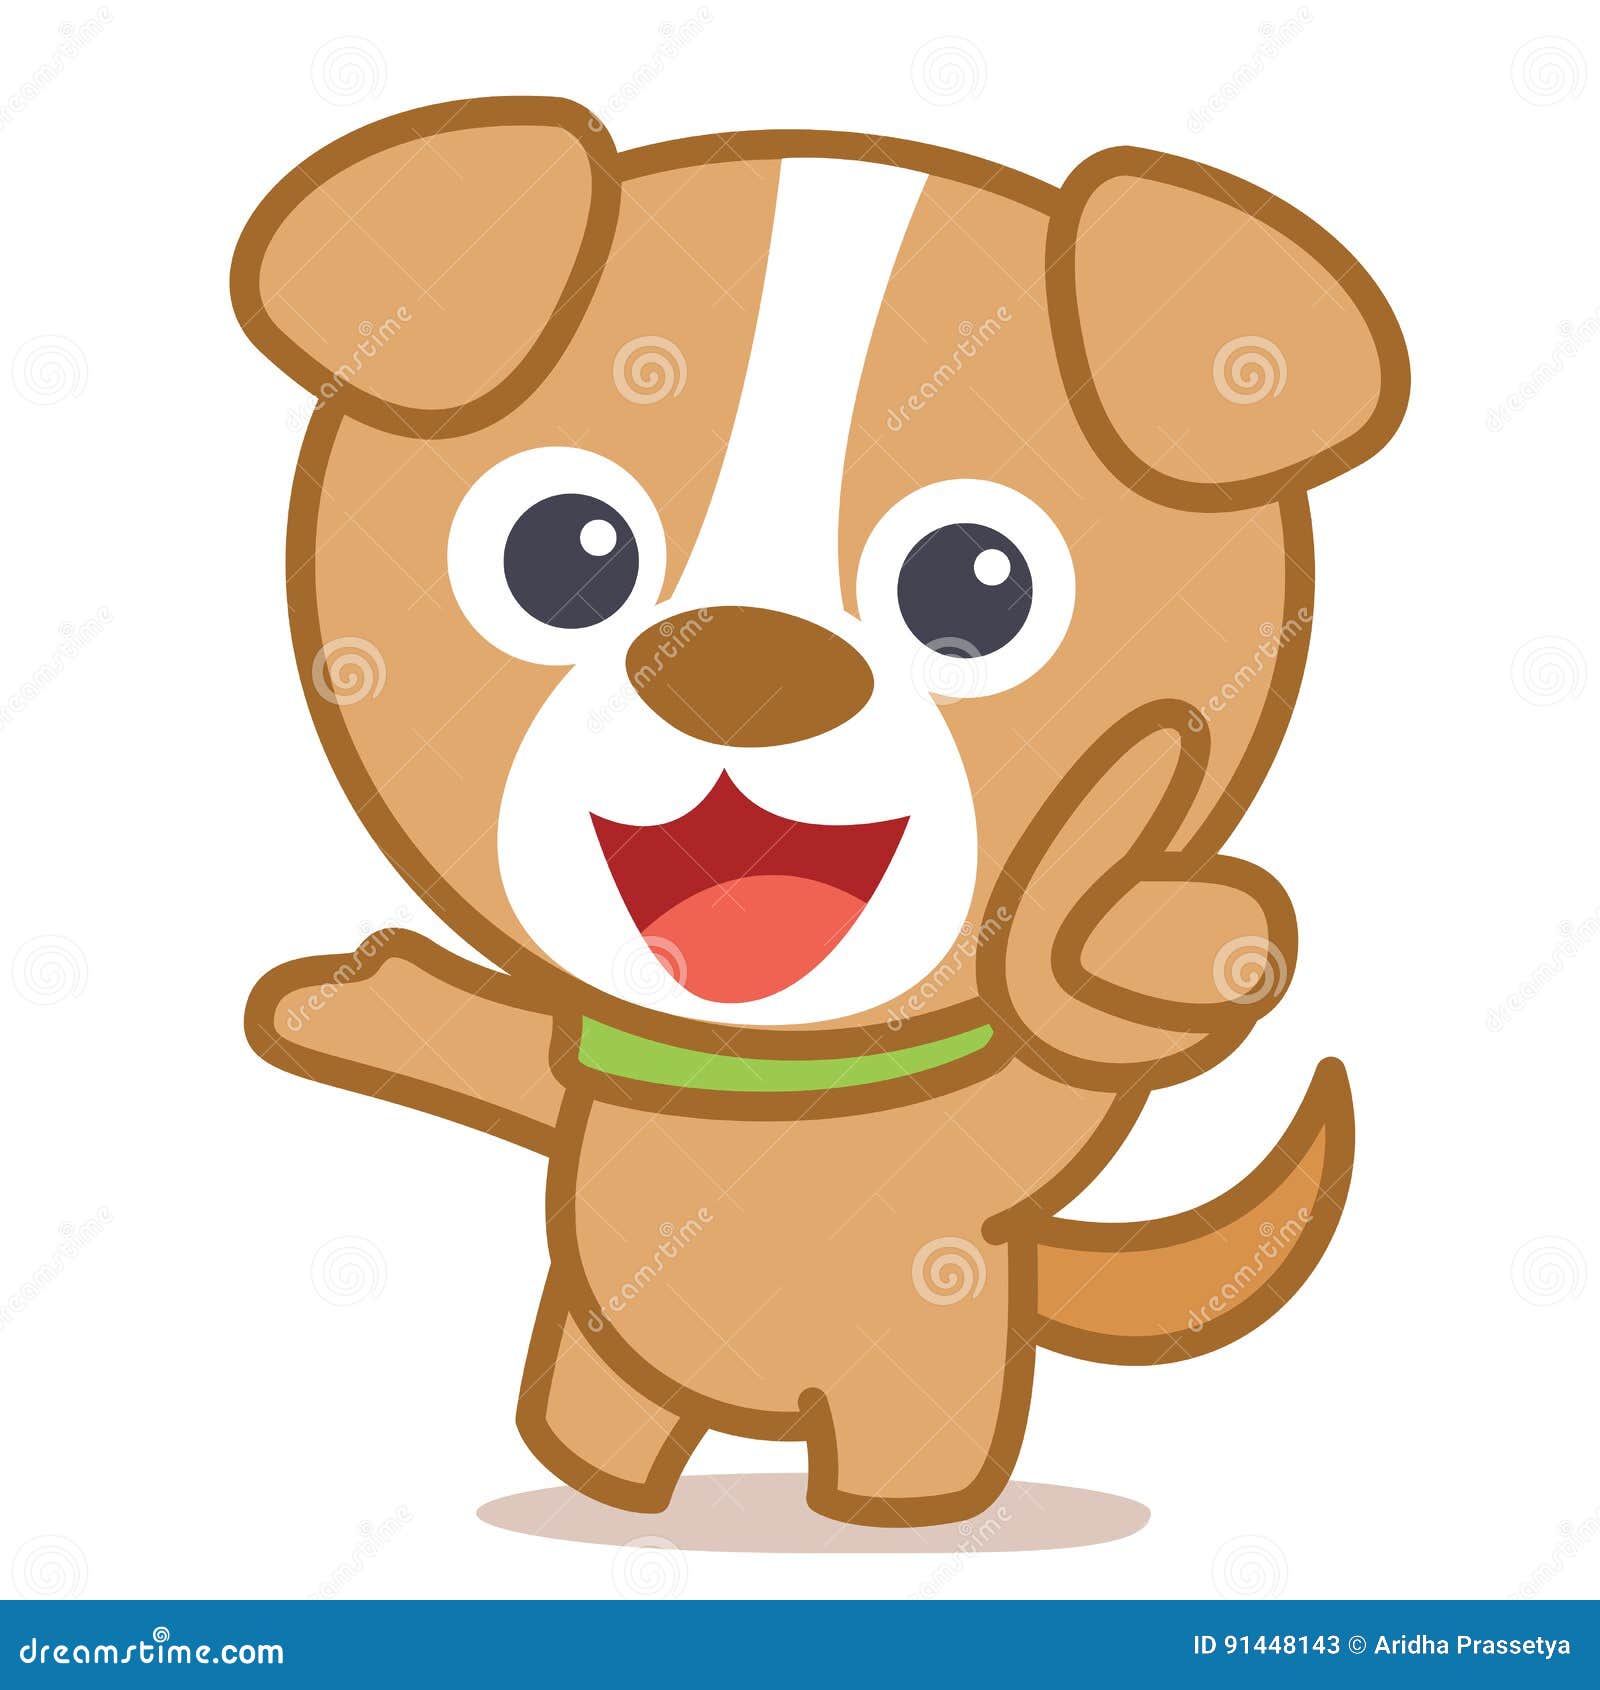 Funny Dog Cartoon Vector Art Stock Vector - Illustration of mascot